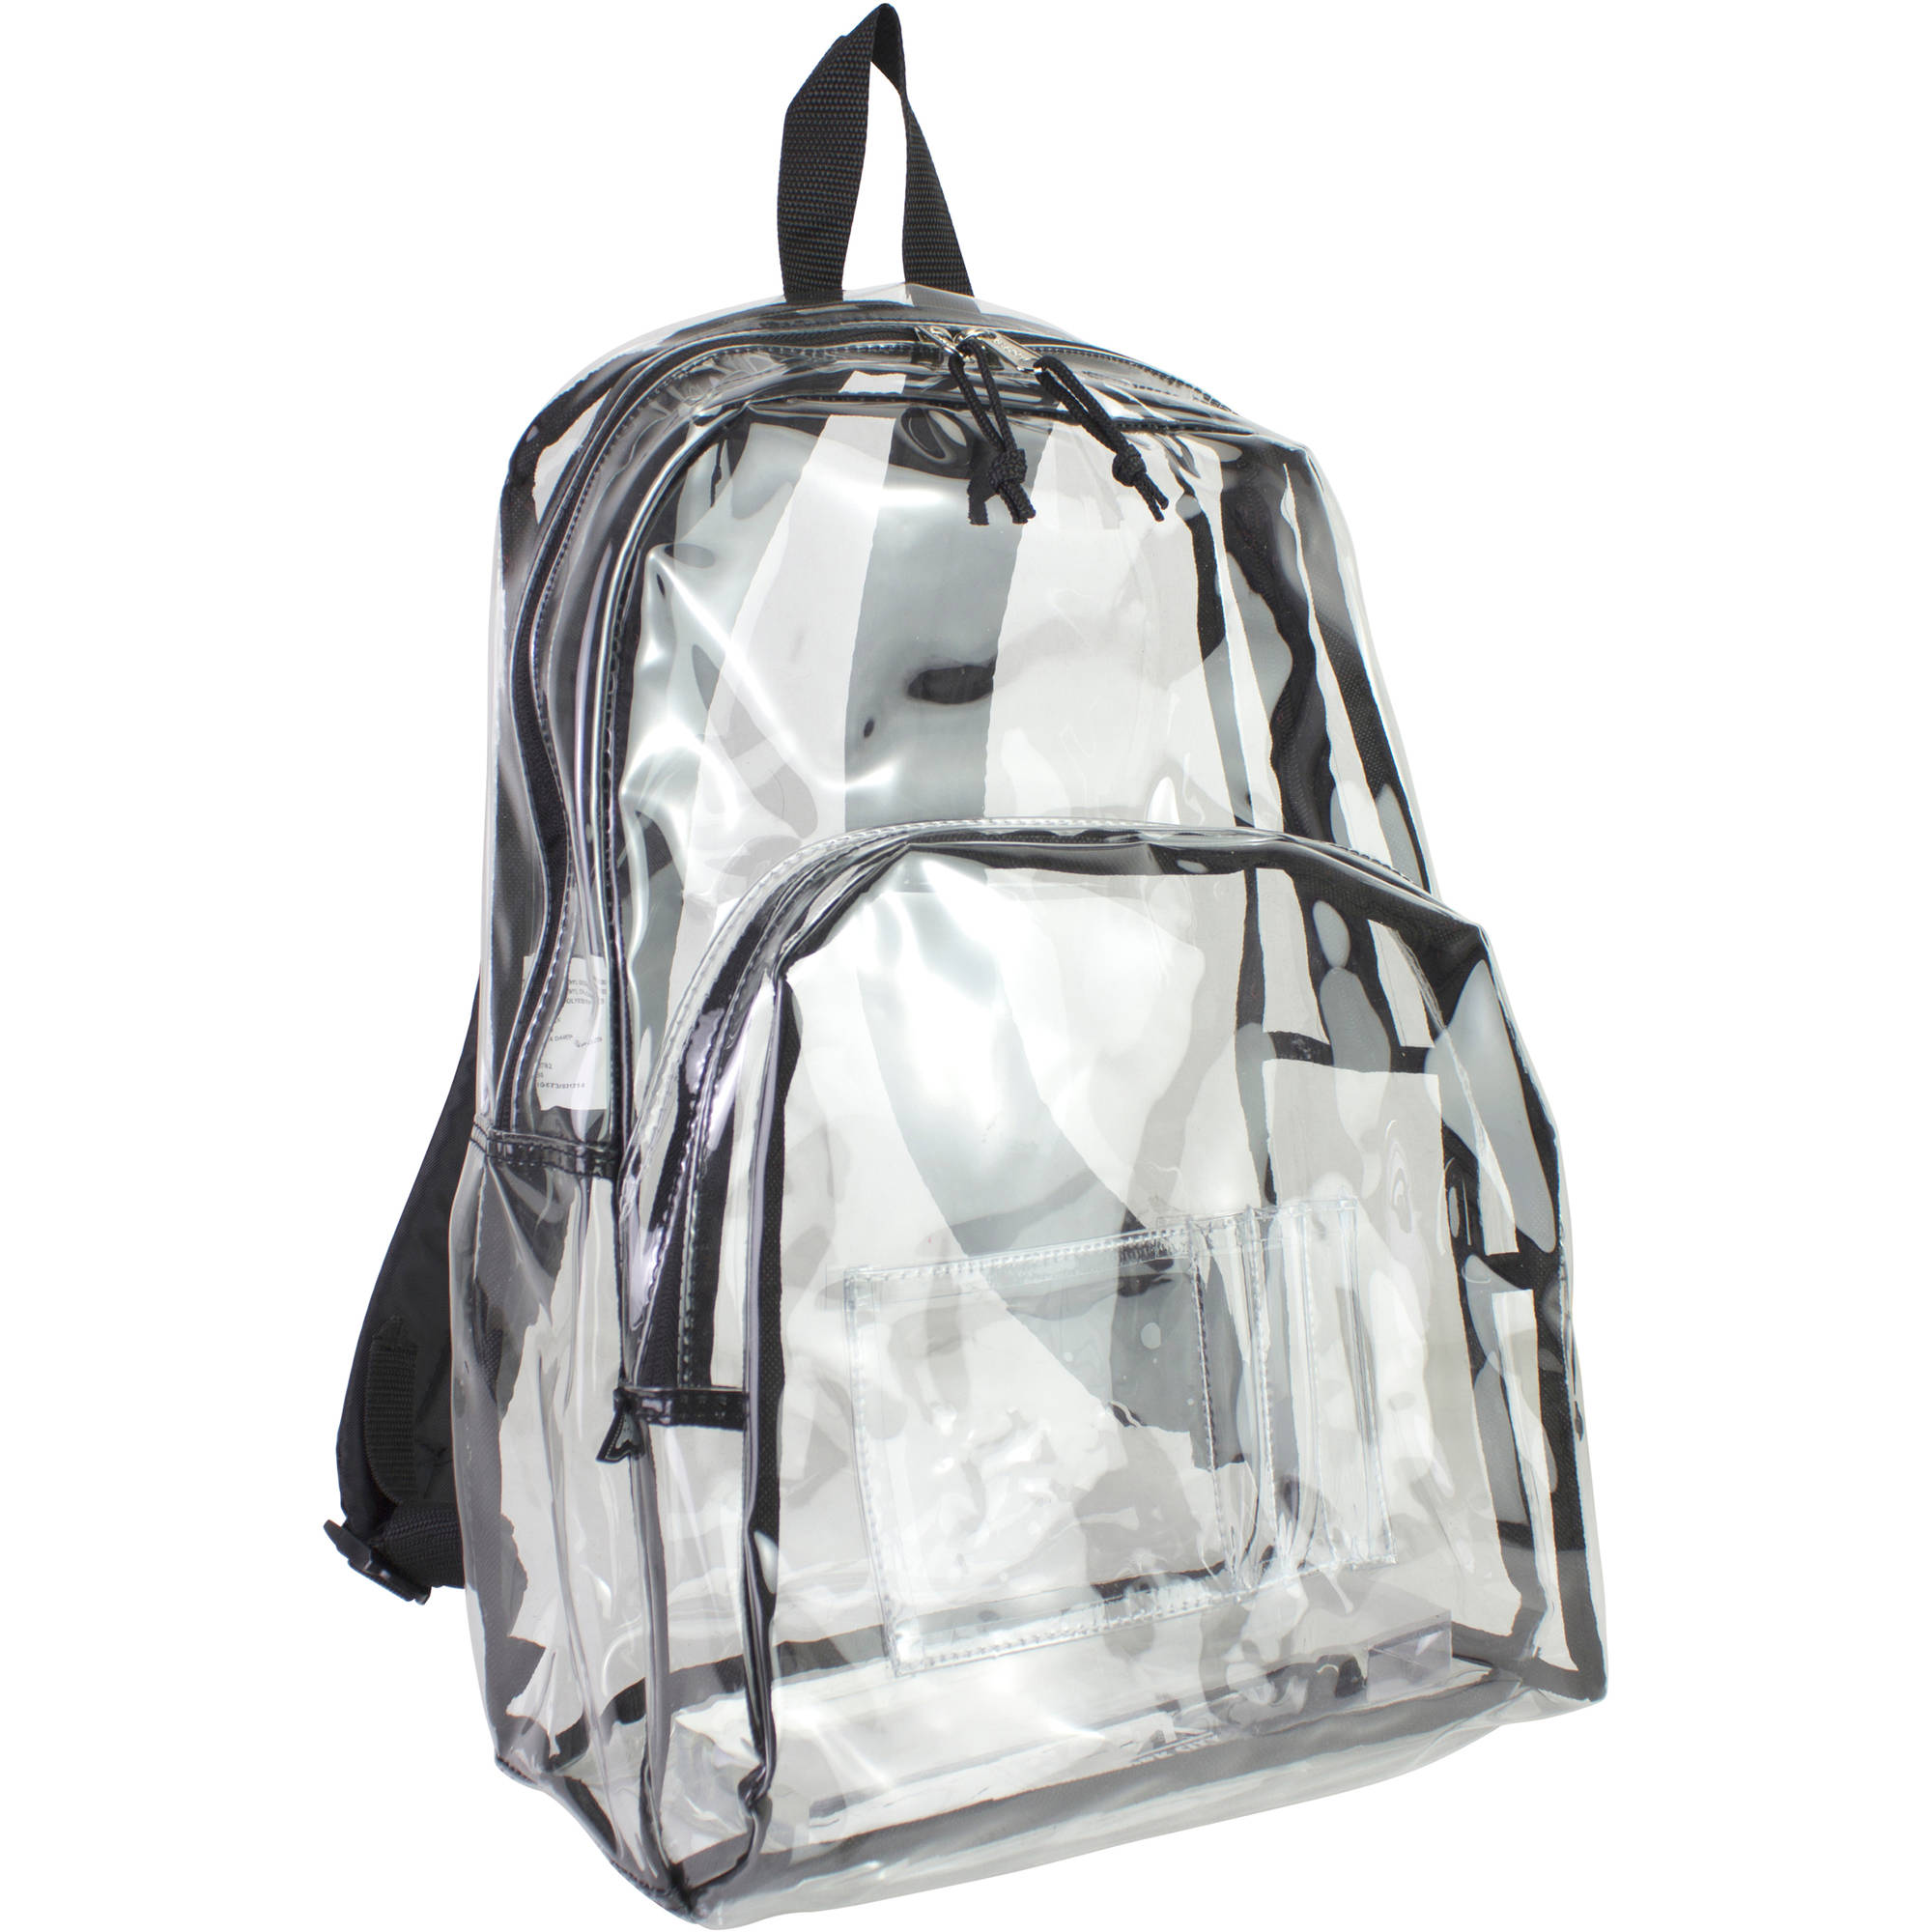 Eastsport Clear Backpack with Front Pocket and Adjustable Padded Shoulder Straps - image 1 of 4